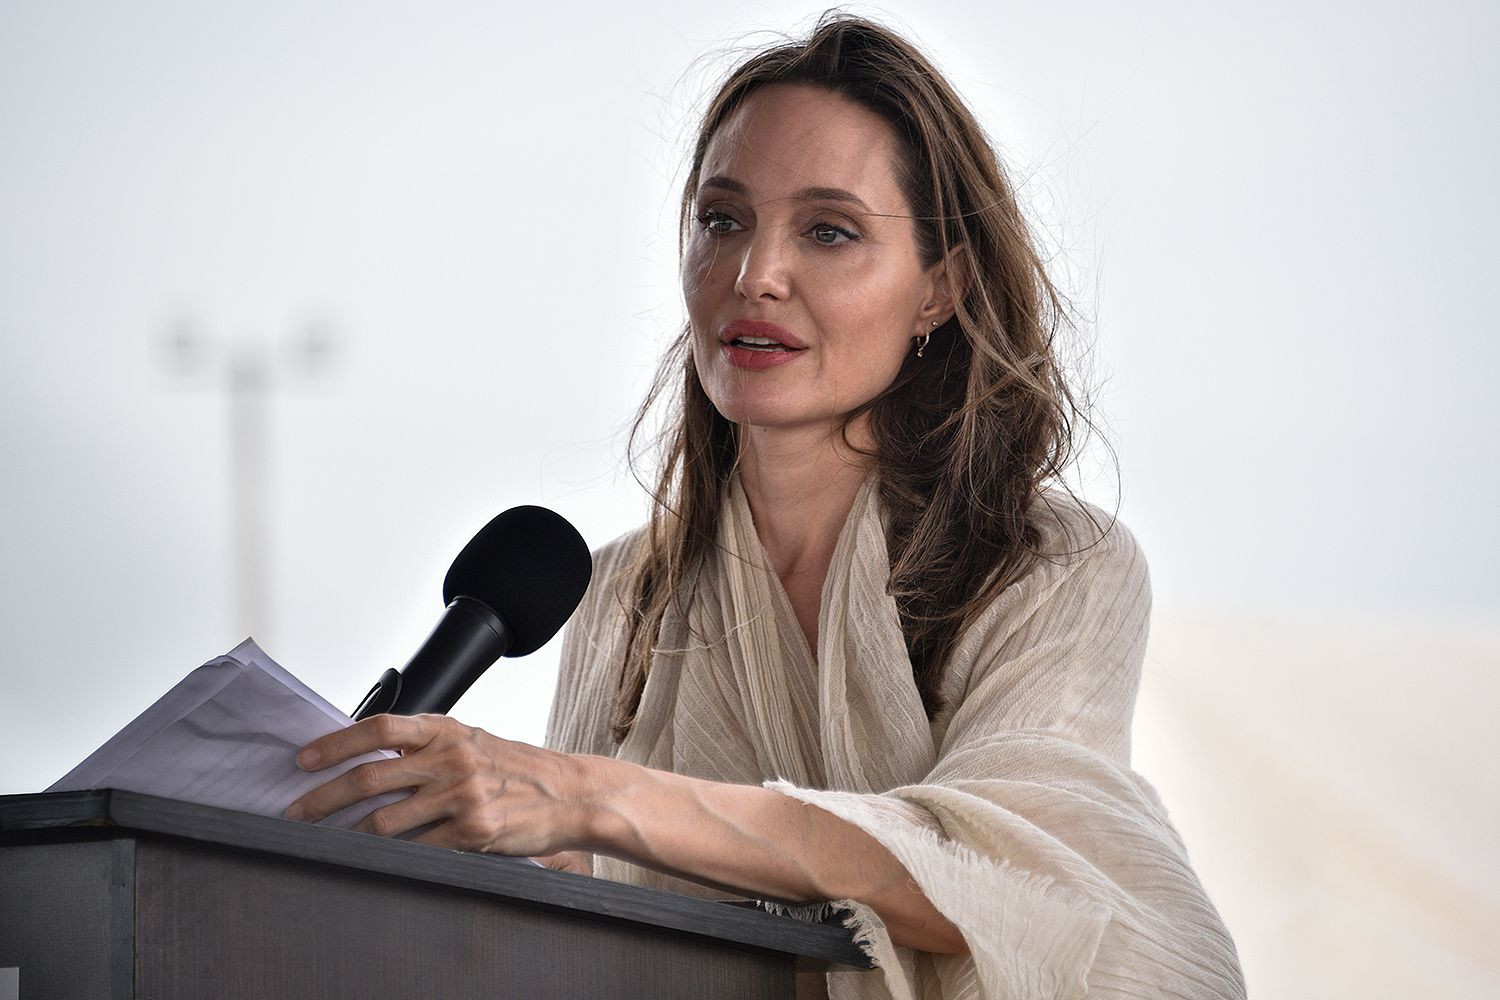 20 Tahun Menjabat, Angelina Jolie Undur Diri Dari Pbb